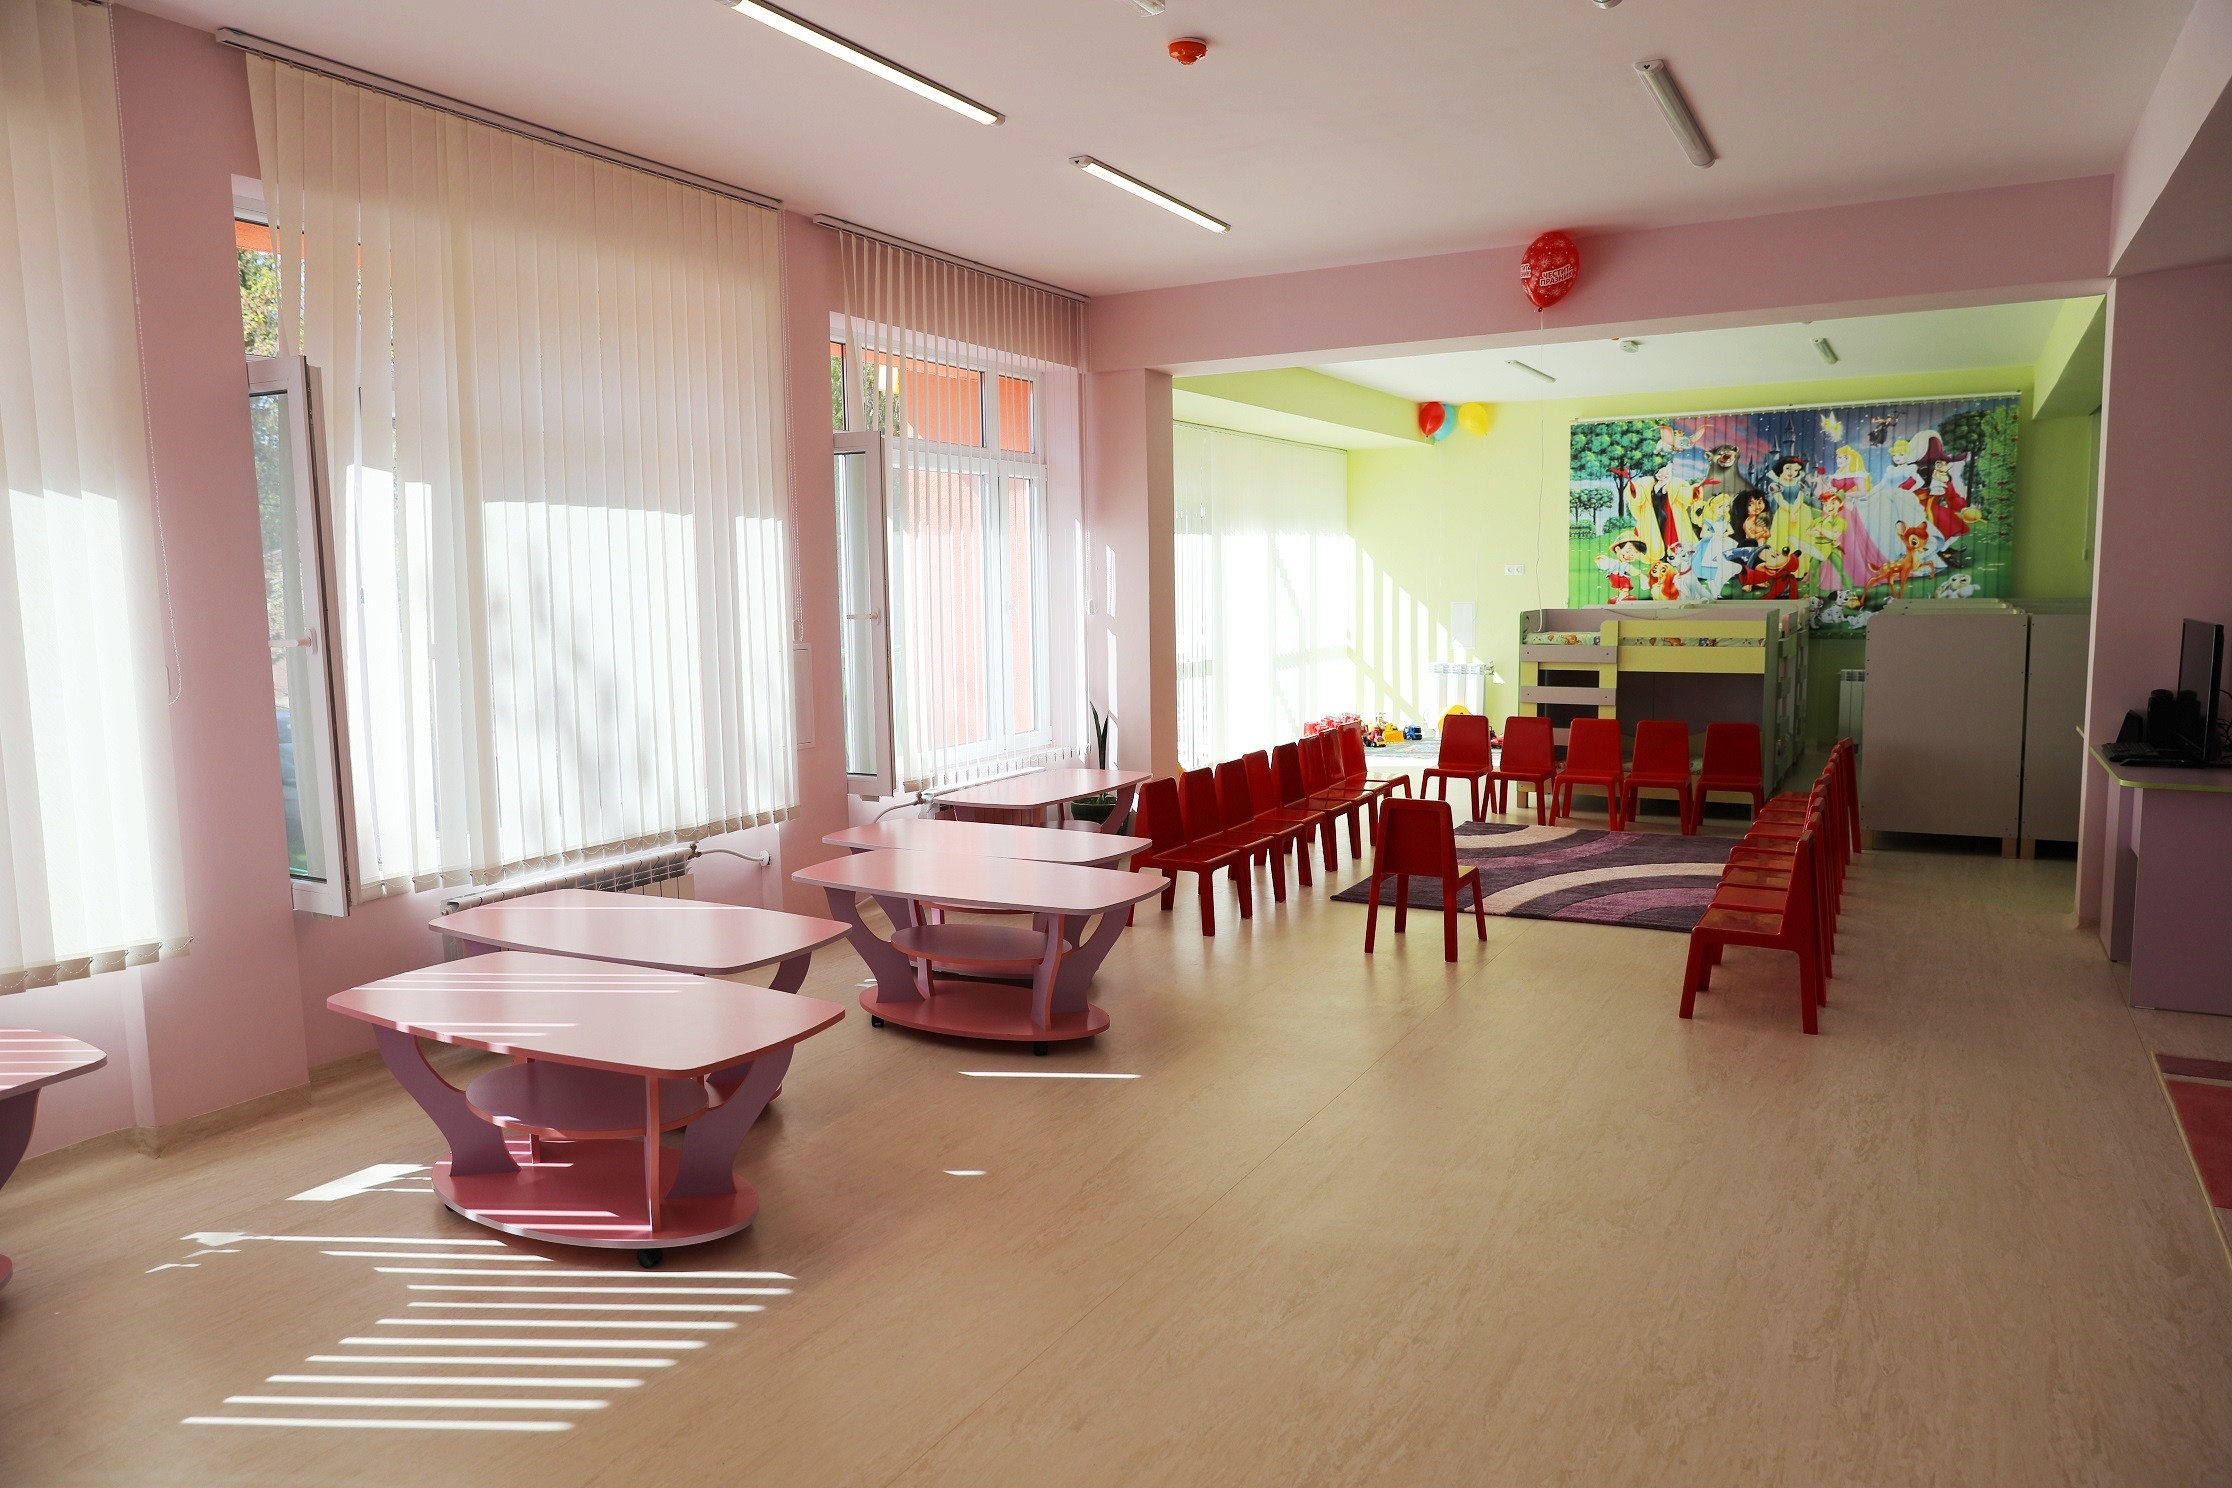  Откриване на ЦДГ `Пинокио 1` по проект `Ремонт на пет общински учебни заведения в град Русе, включително прилежащите им дворни пространст